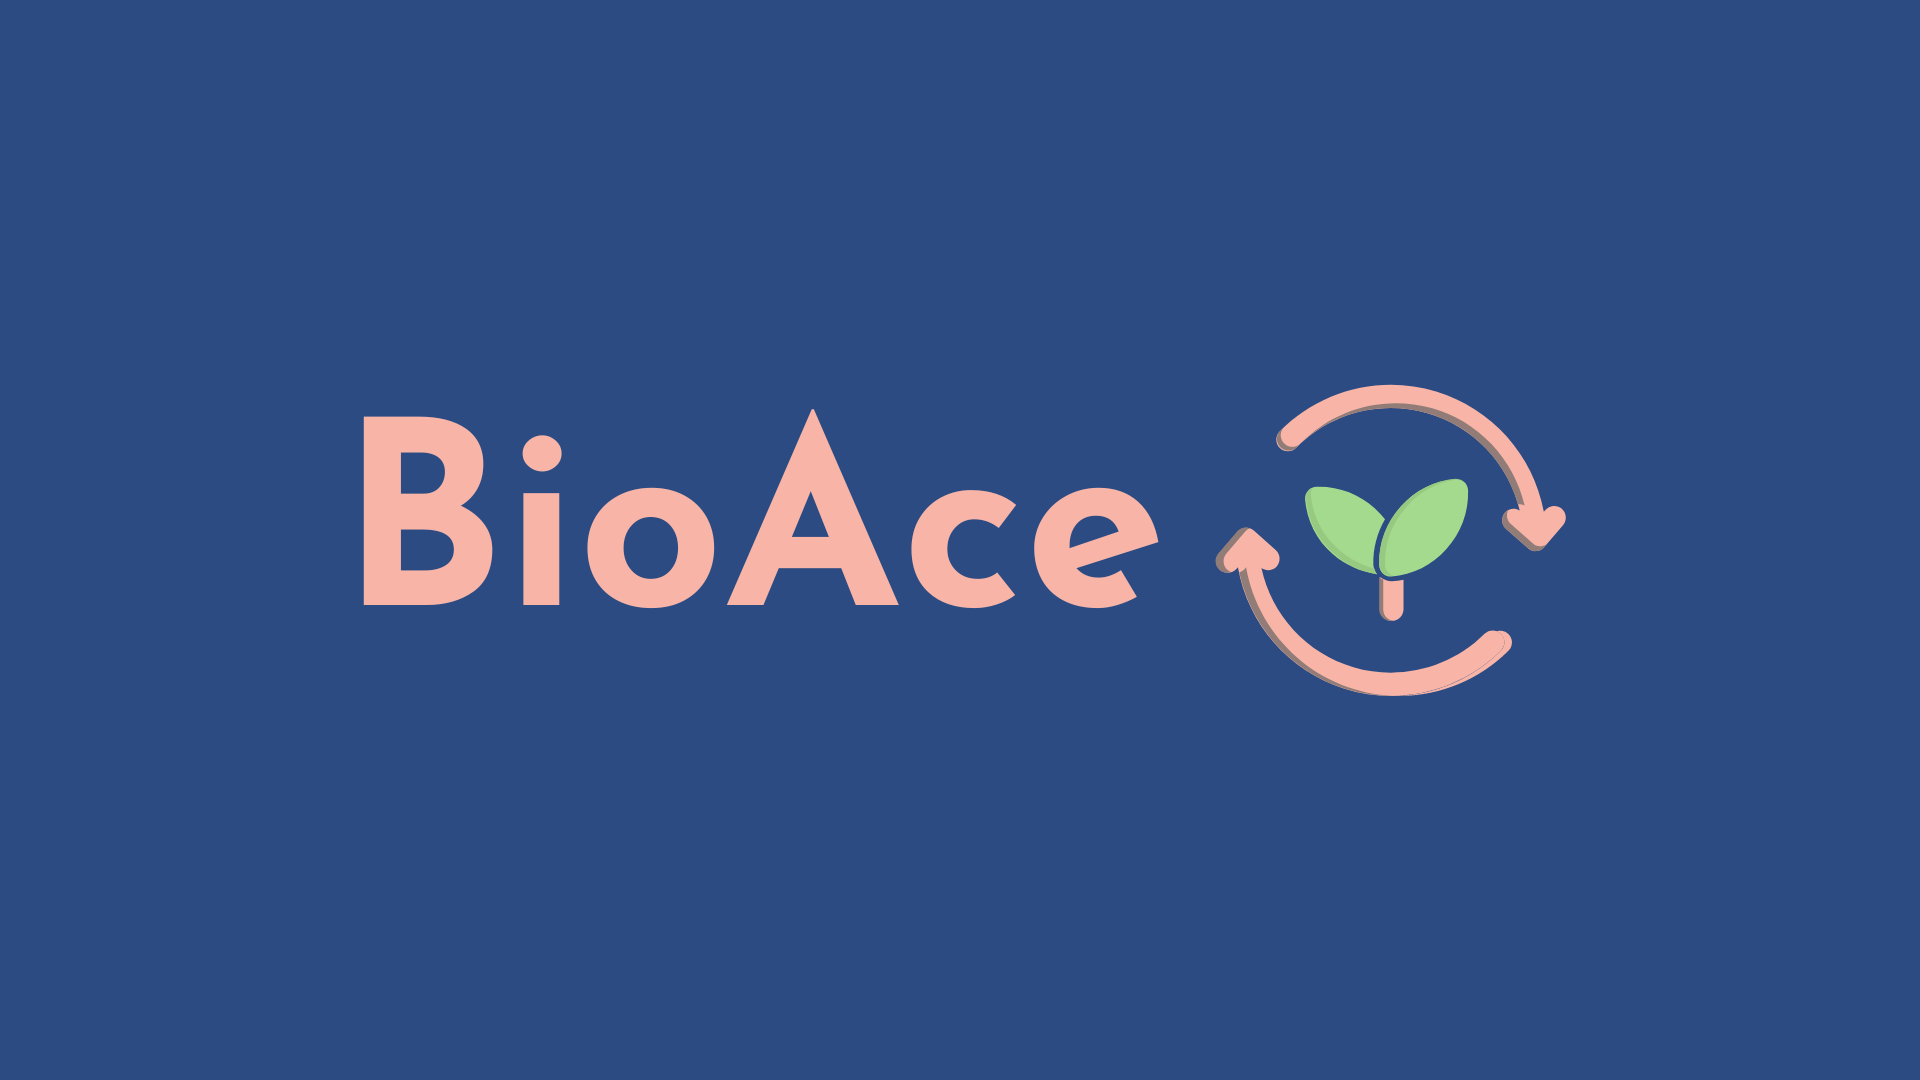 BioAce